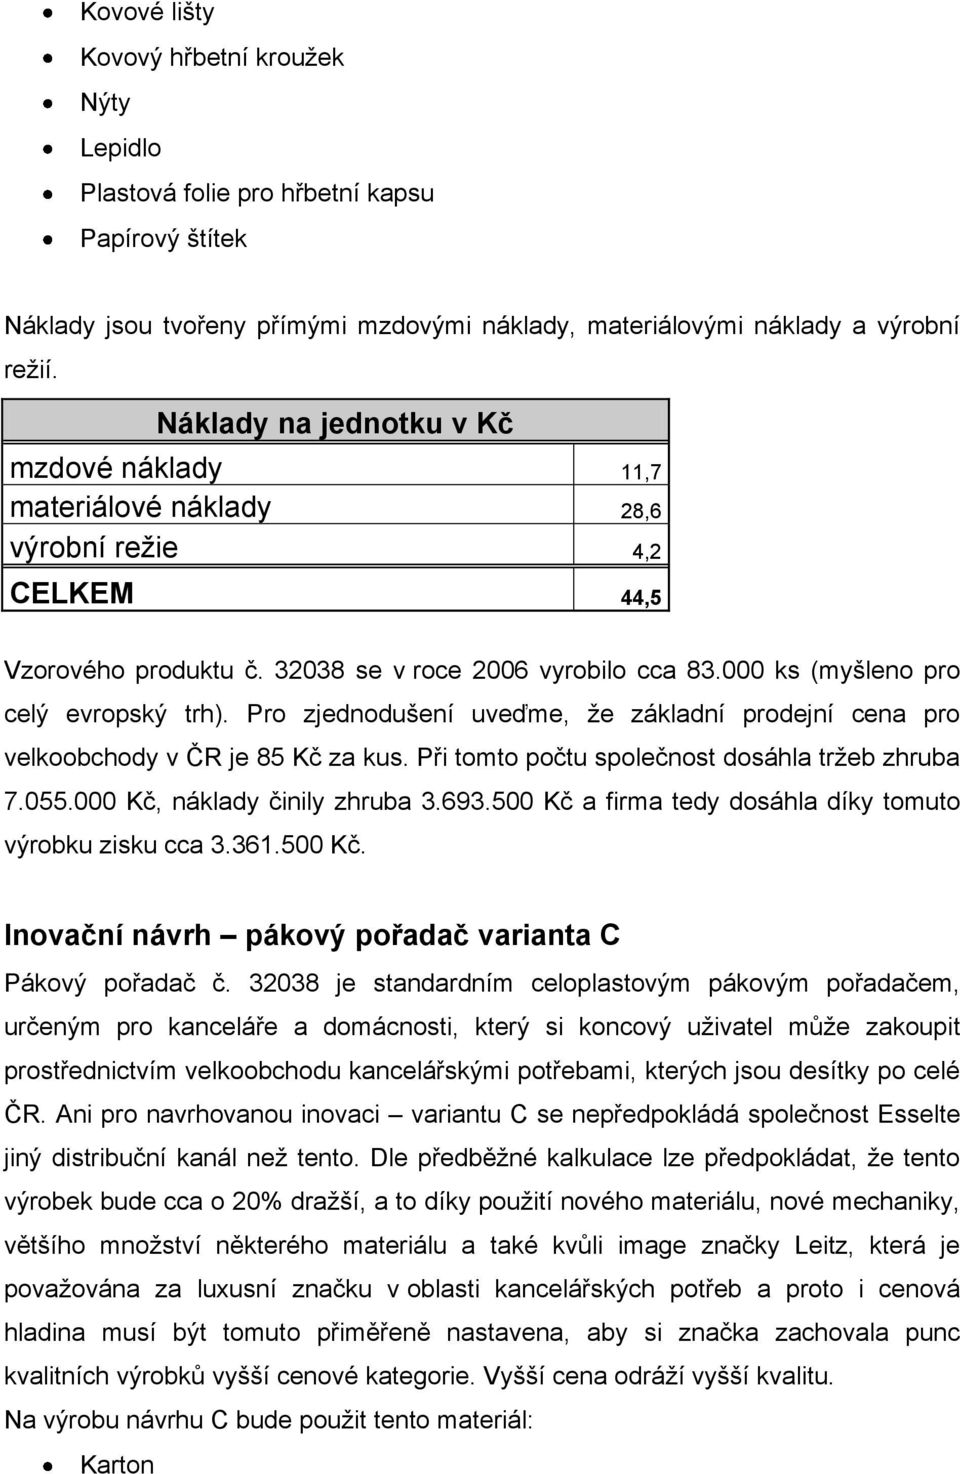 Pro zjednodušení uveďme, že základní prodejní cena pro velkoobchody v ČR je 85 Kč za kus. Při tomto počtu společnost dosáhla tržeb zhruba 7.055.000 Kč, náklady činily zhruba 3.693.